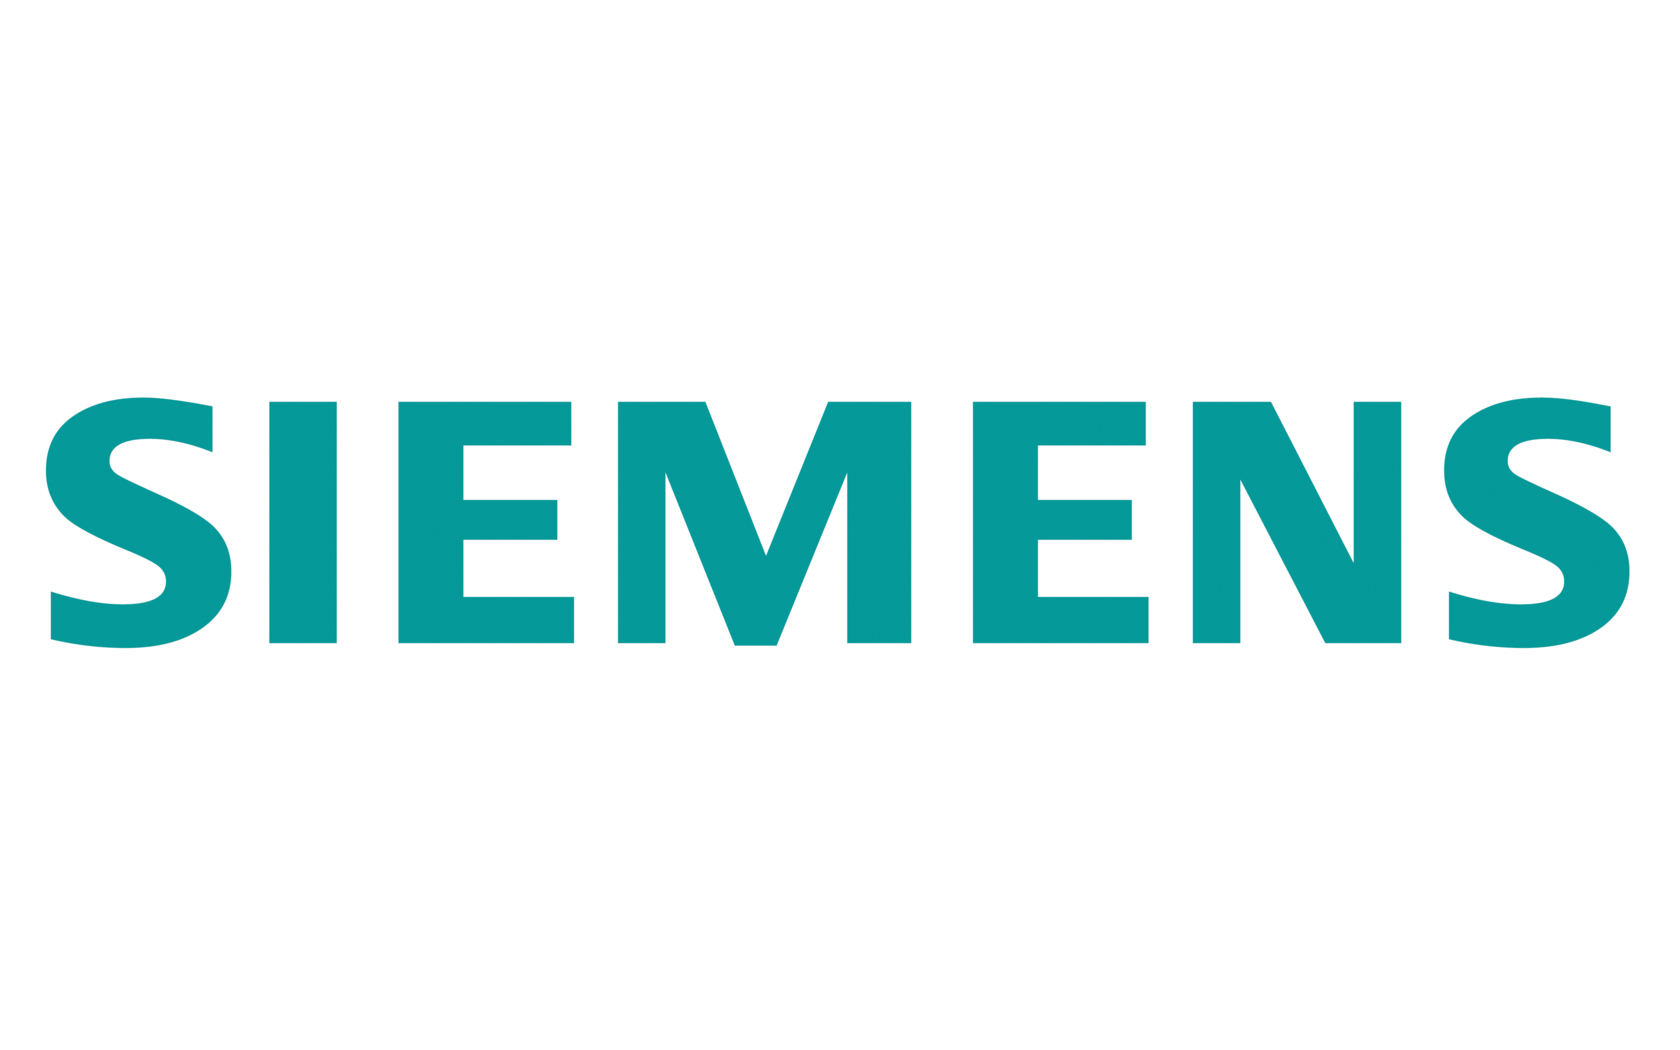 Logo der Siemens AG